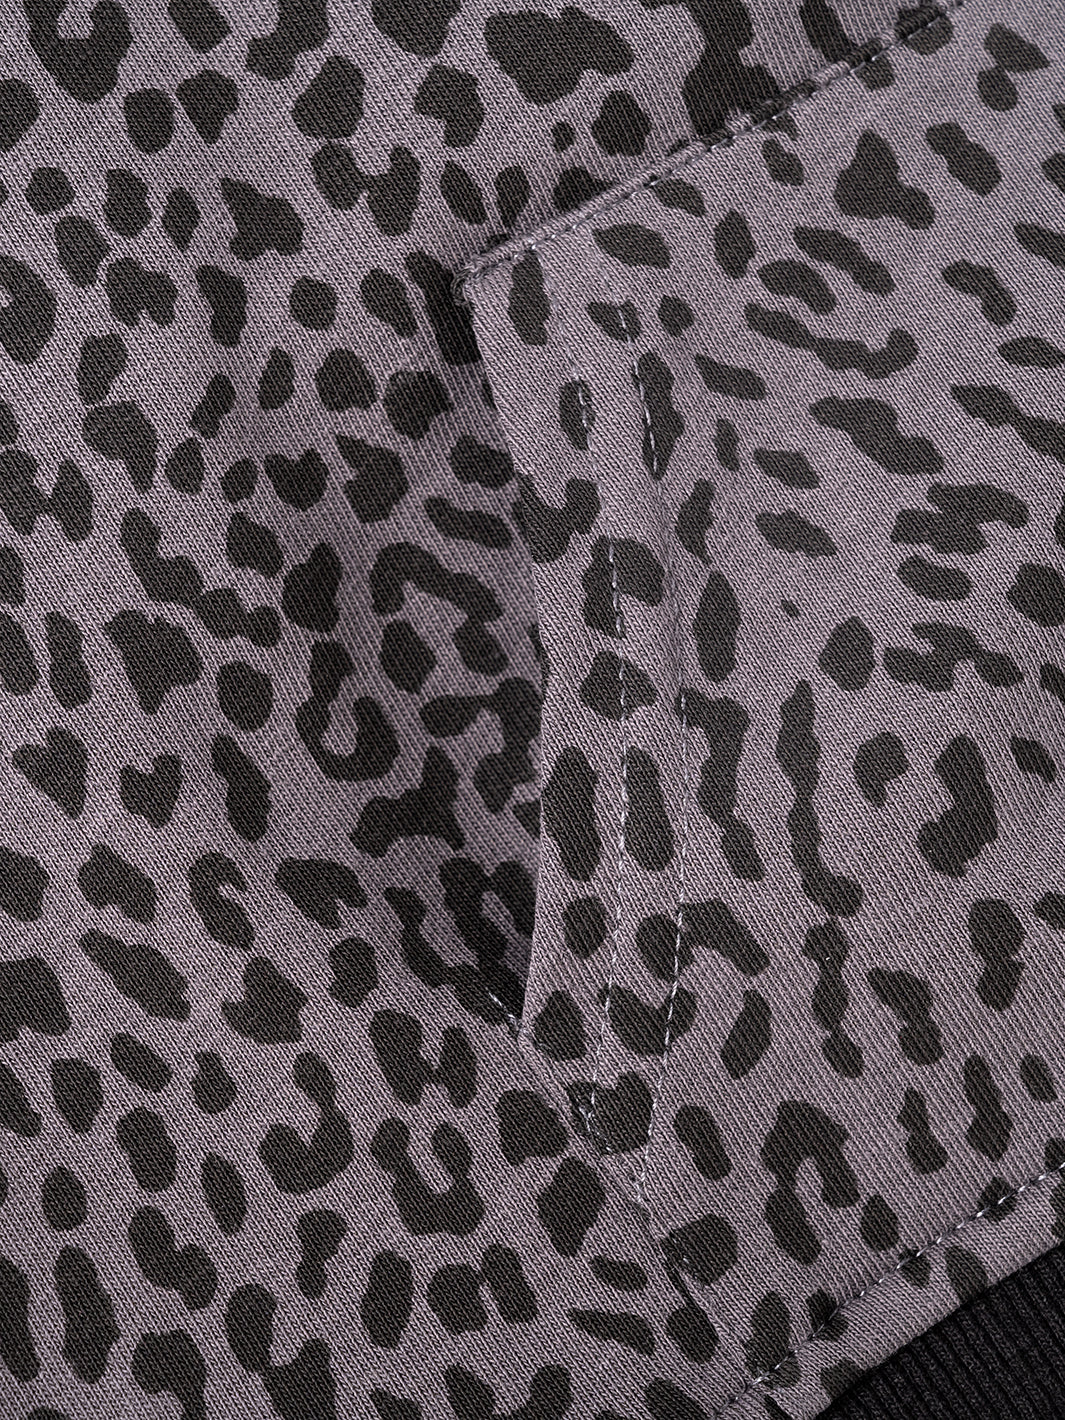 Leopard Pocket Top